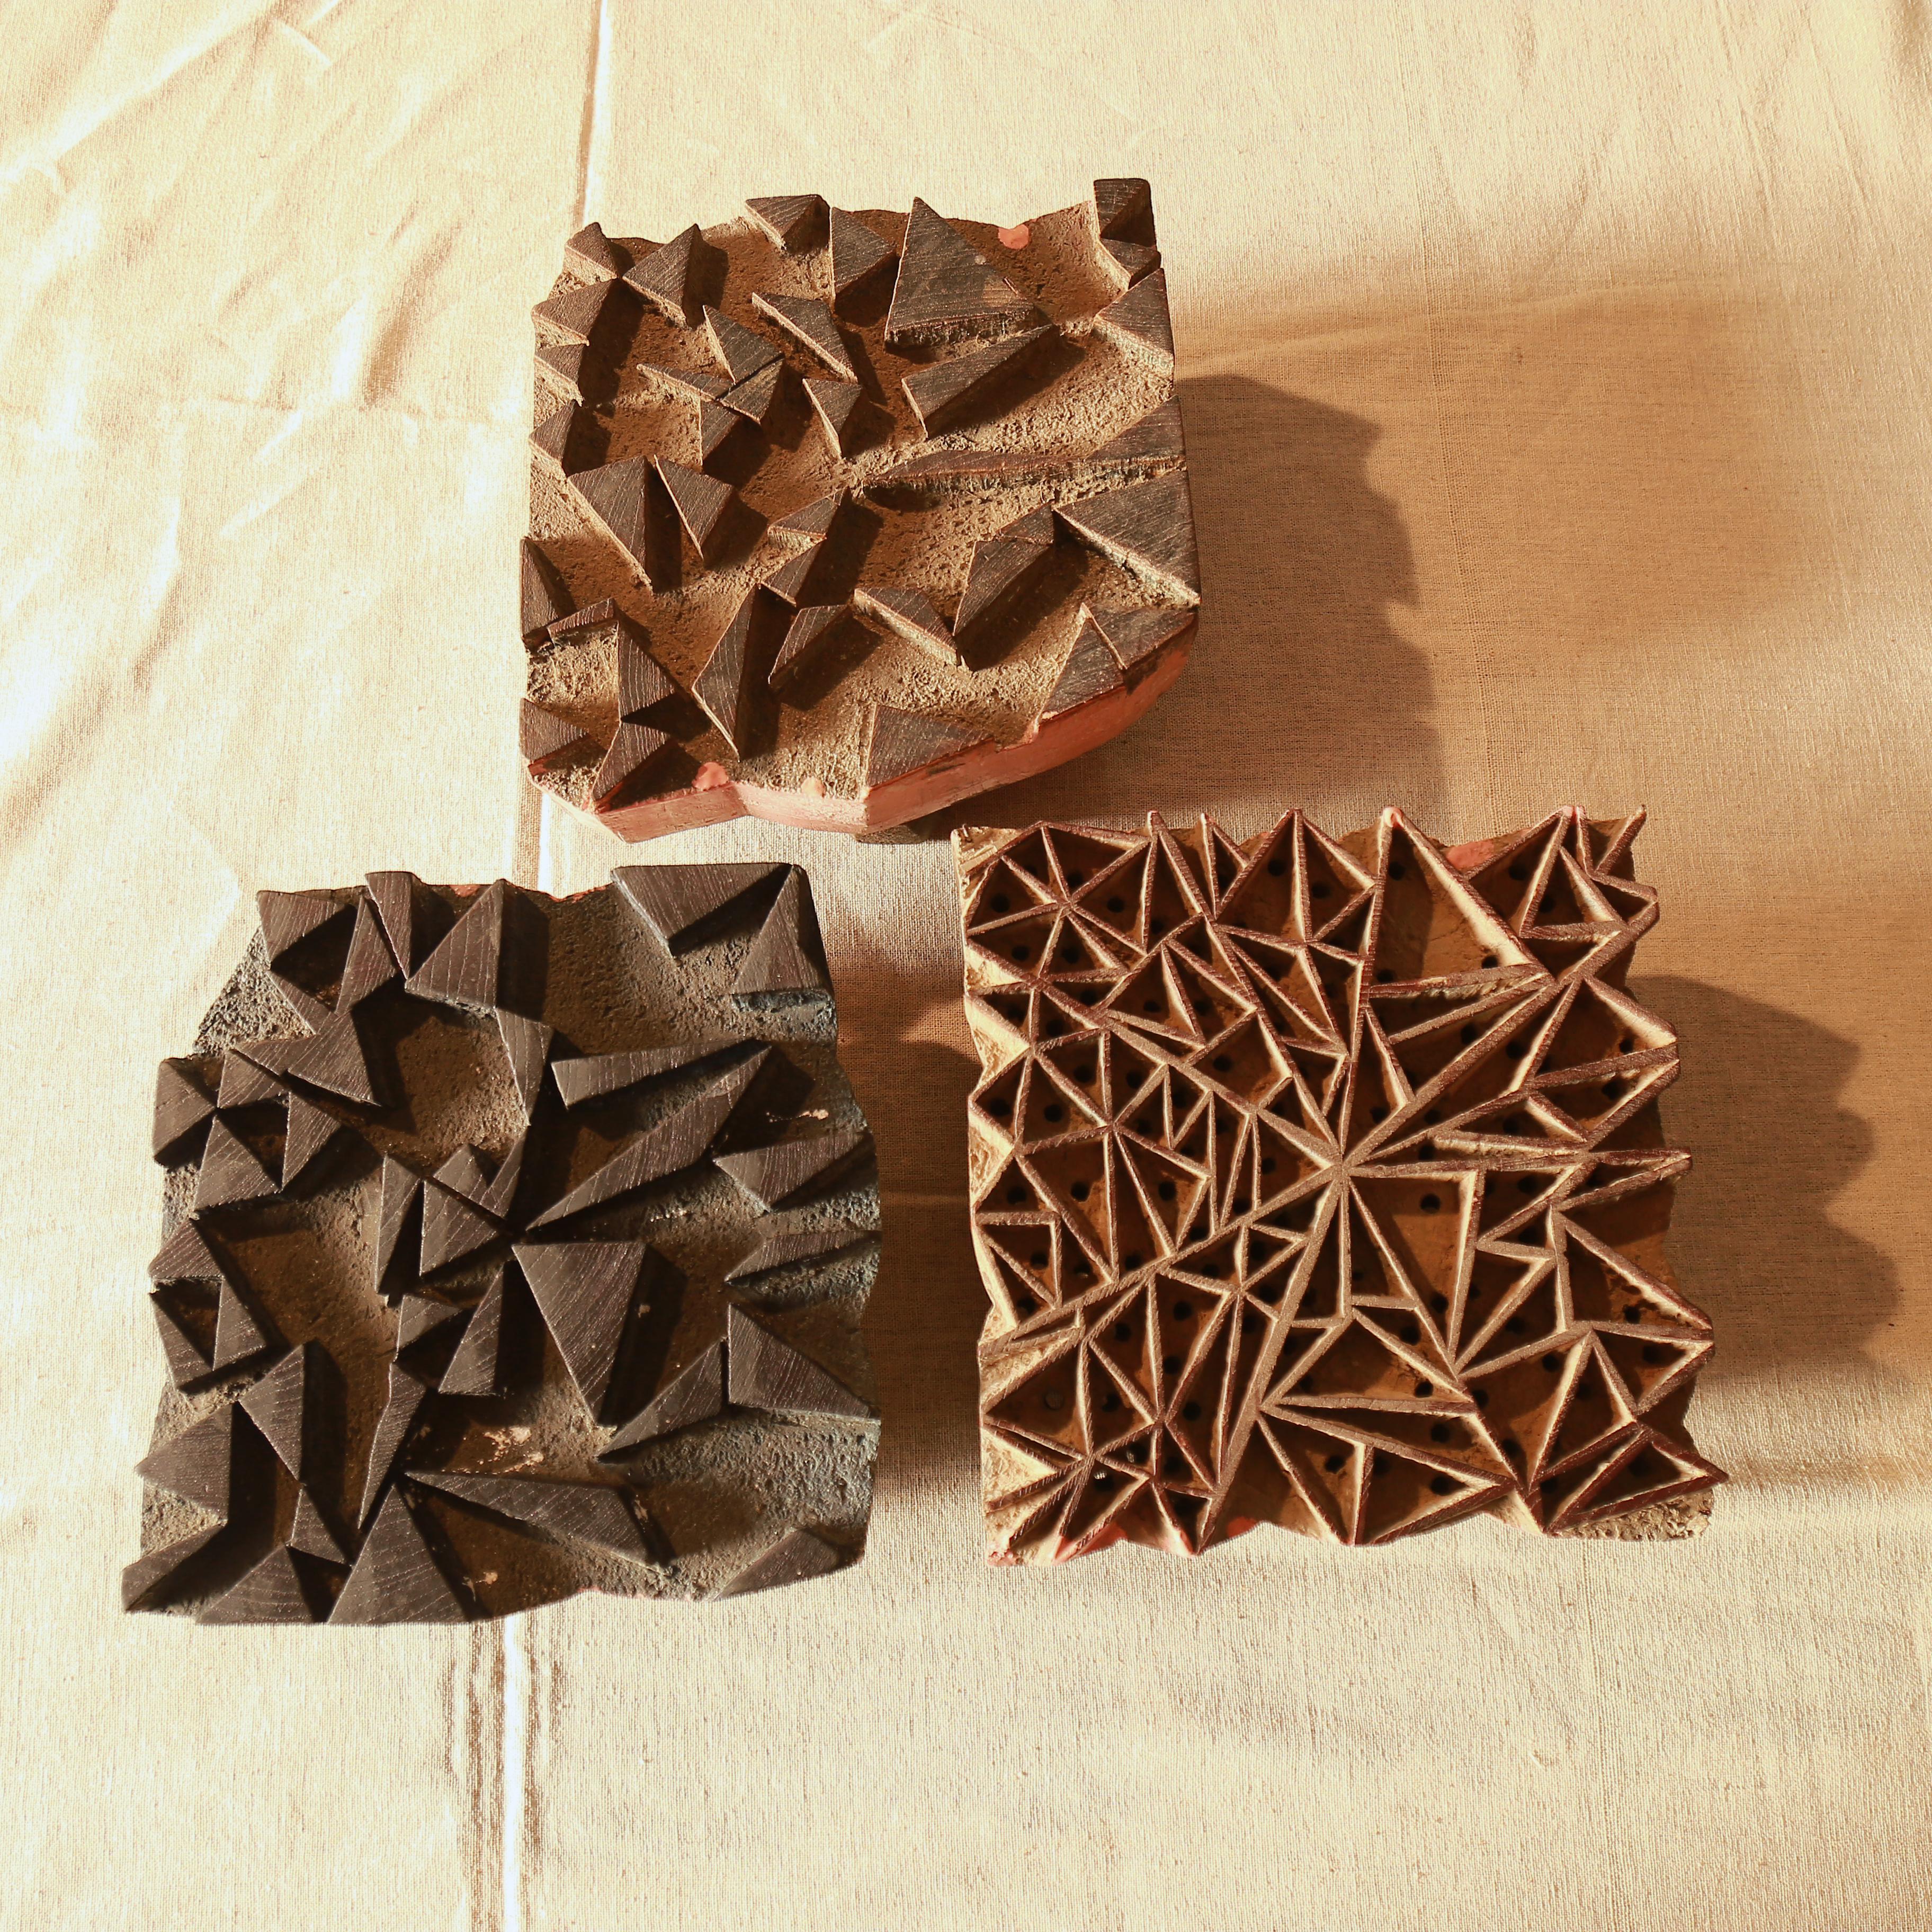 SIK34 - Indian Block-Printed Cotton - Shattered Design - Indigo, Red & Black Dye - Blocks